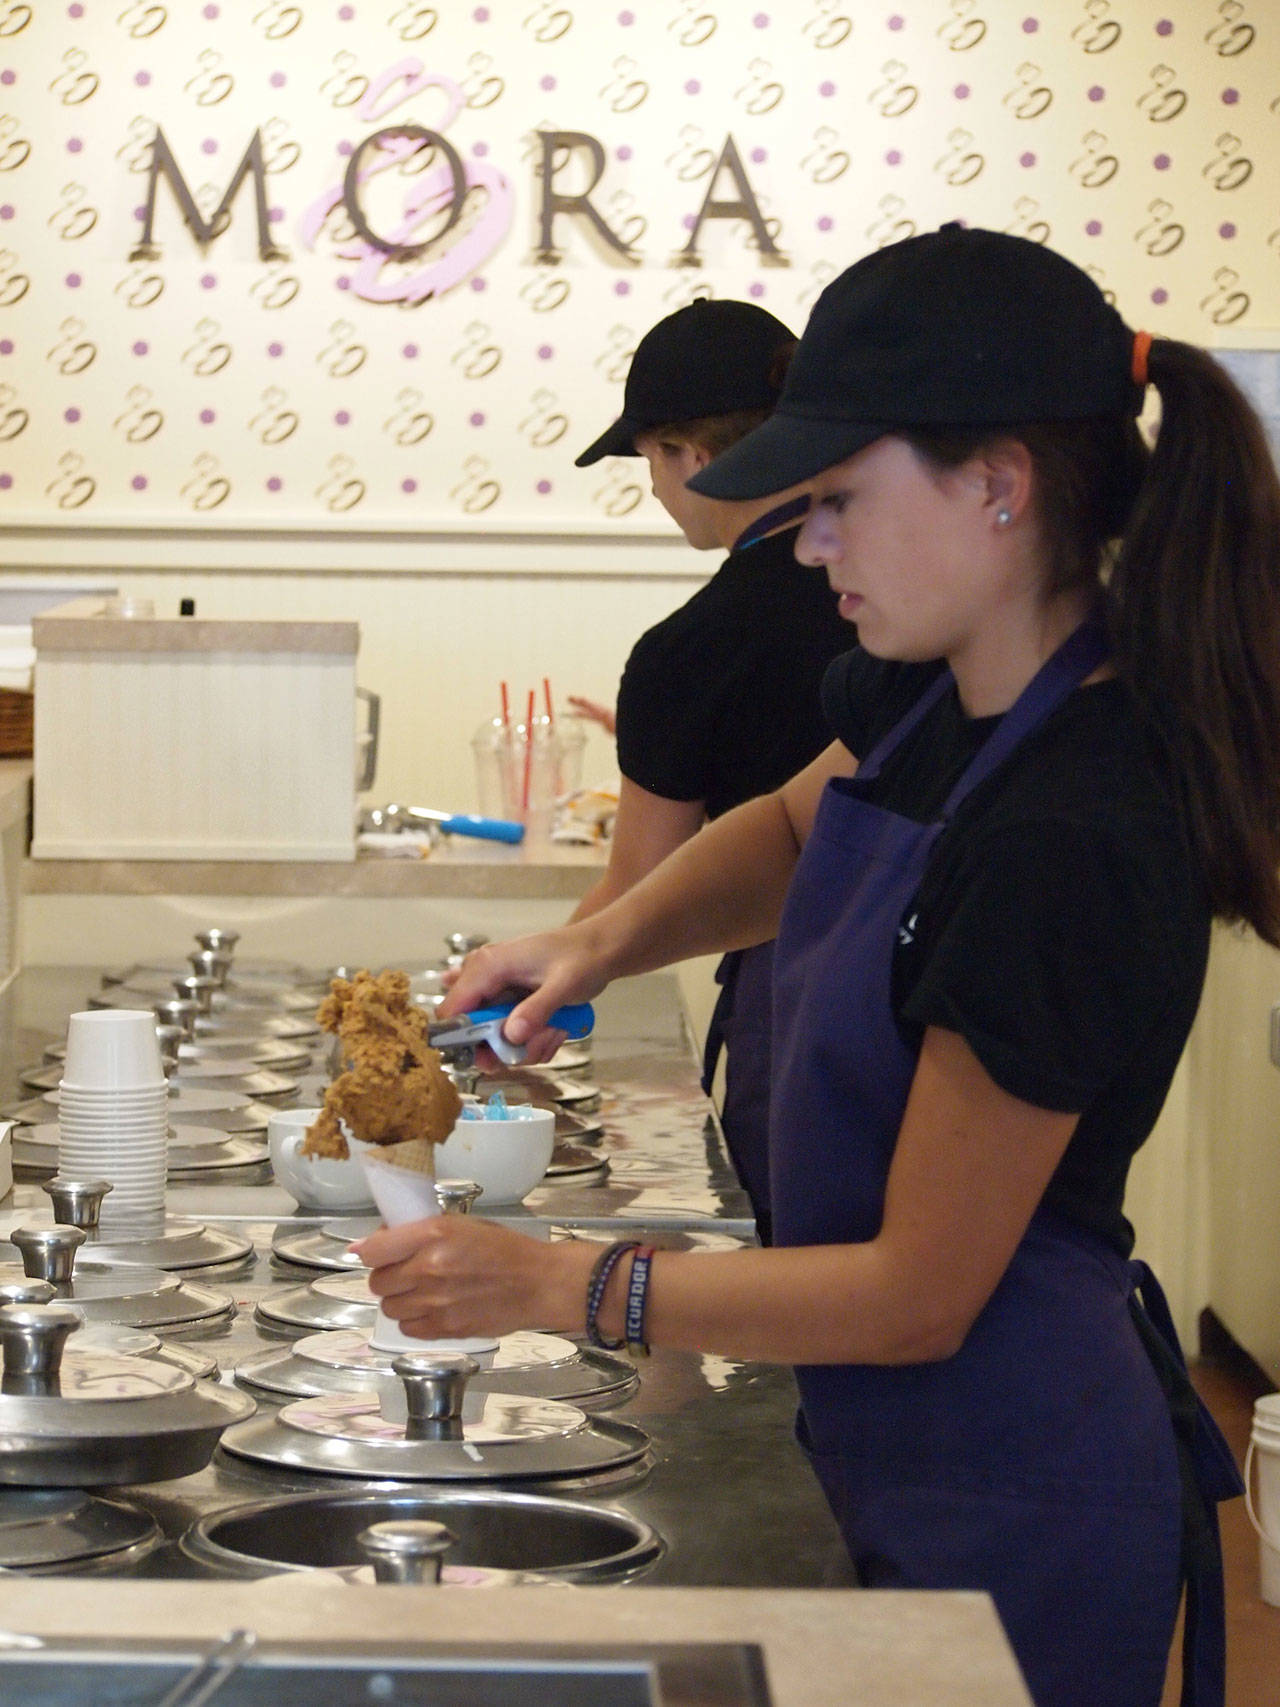 Mora named ‘best ice cream shop’ in Washington by Thrillist